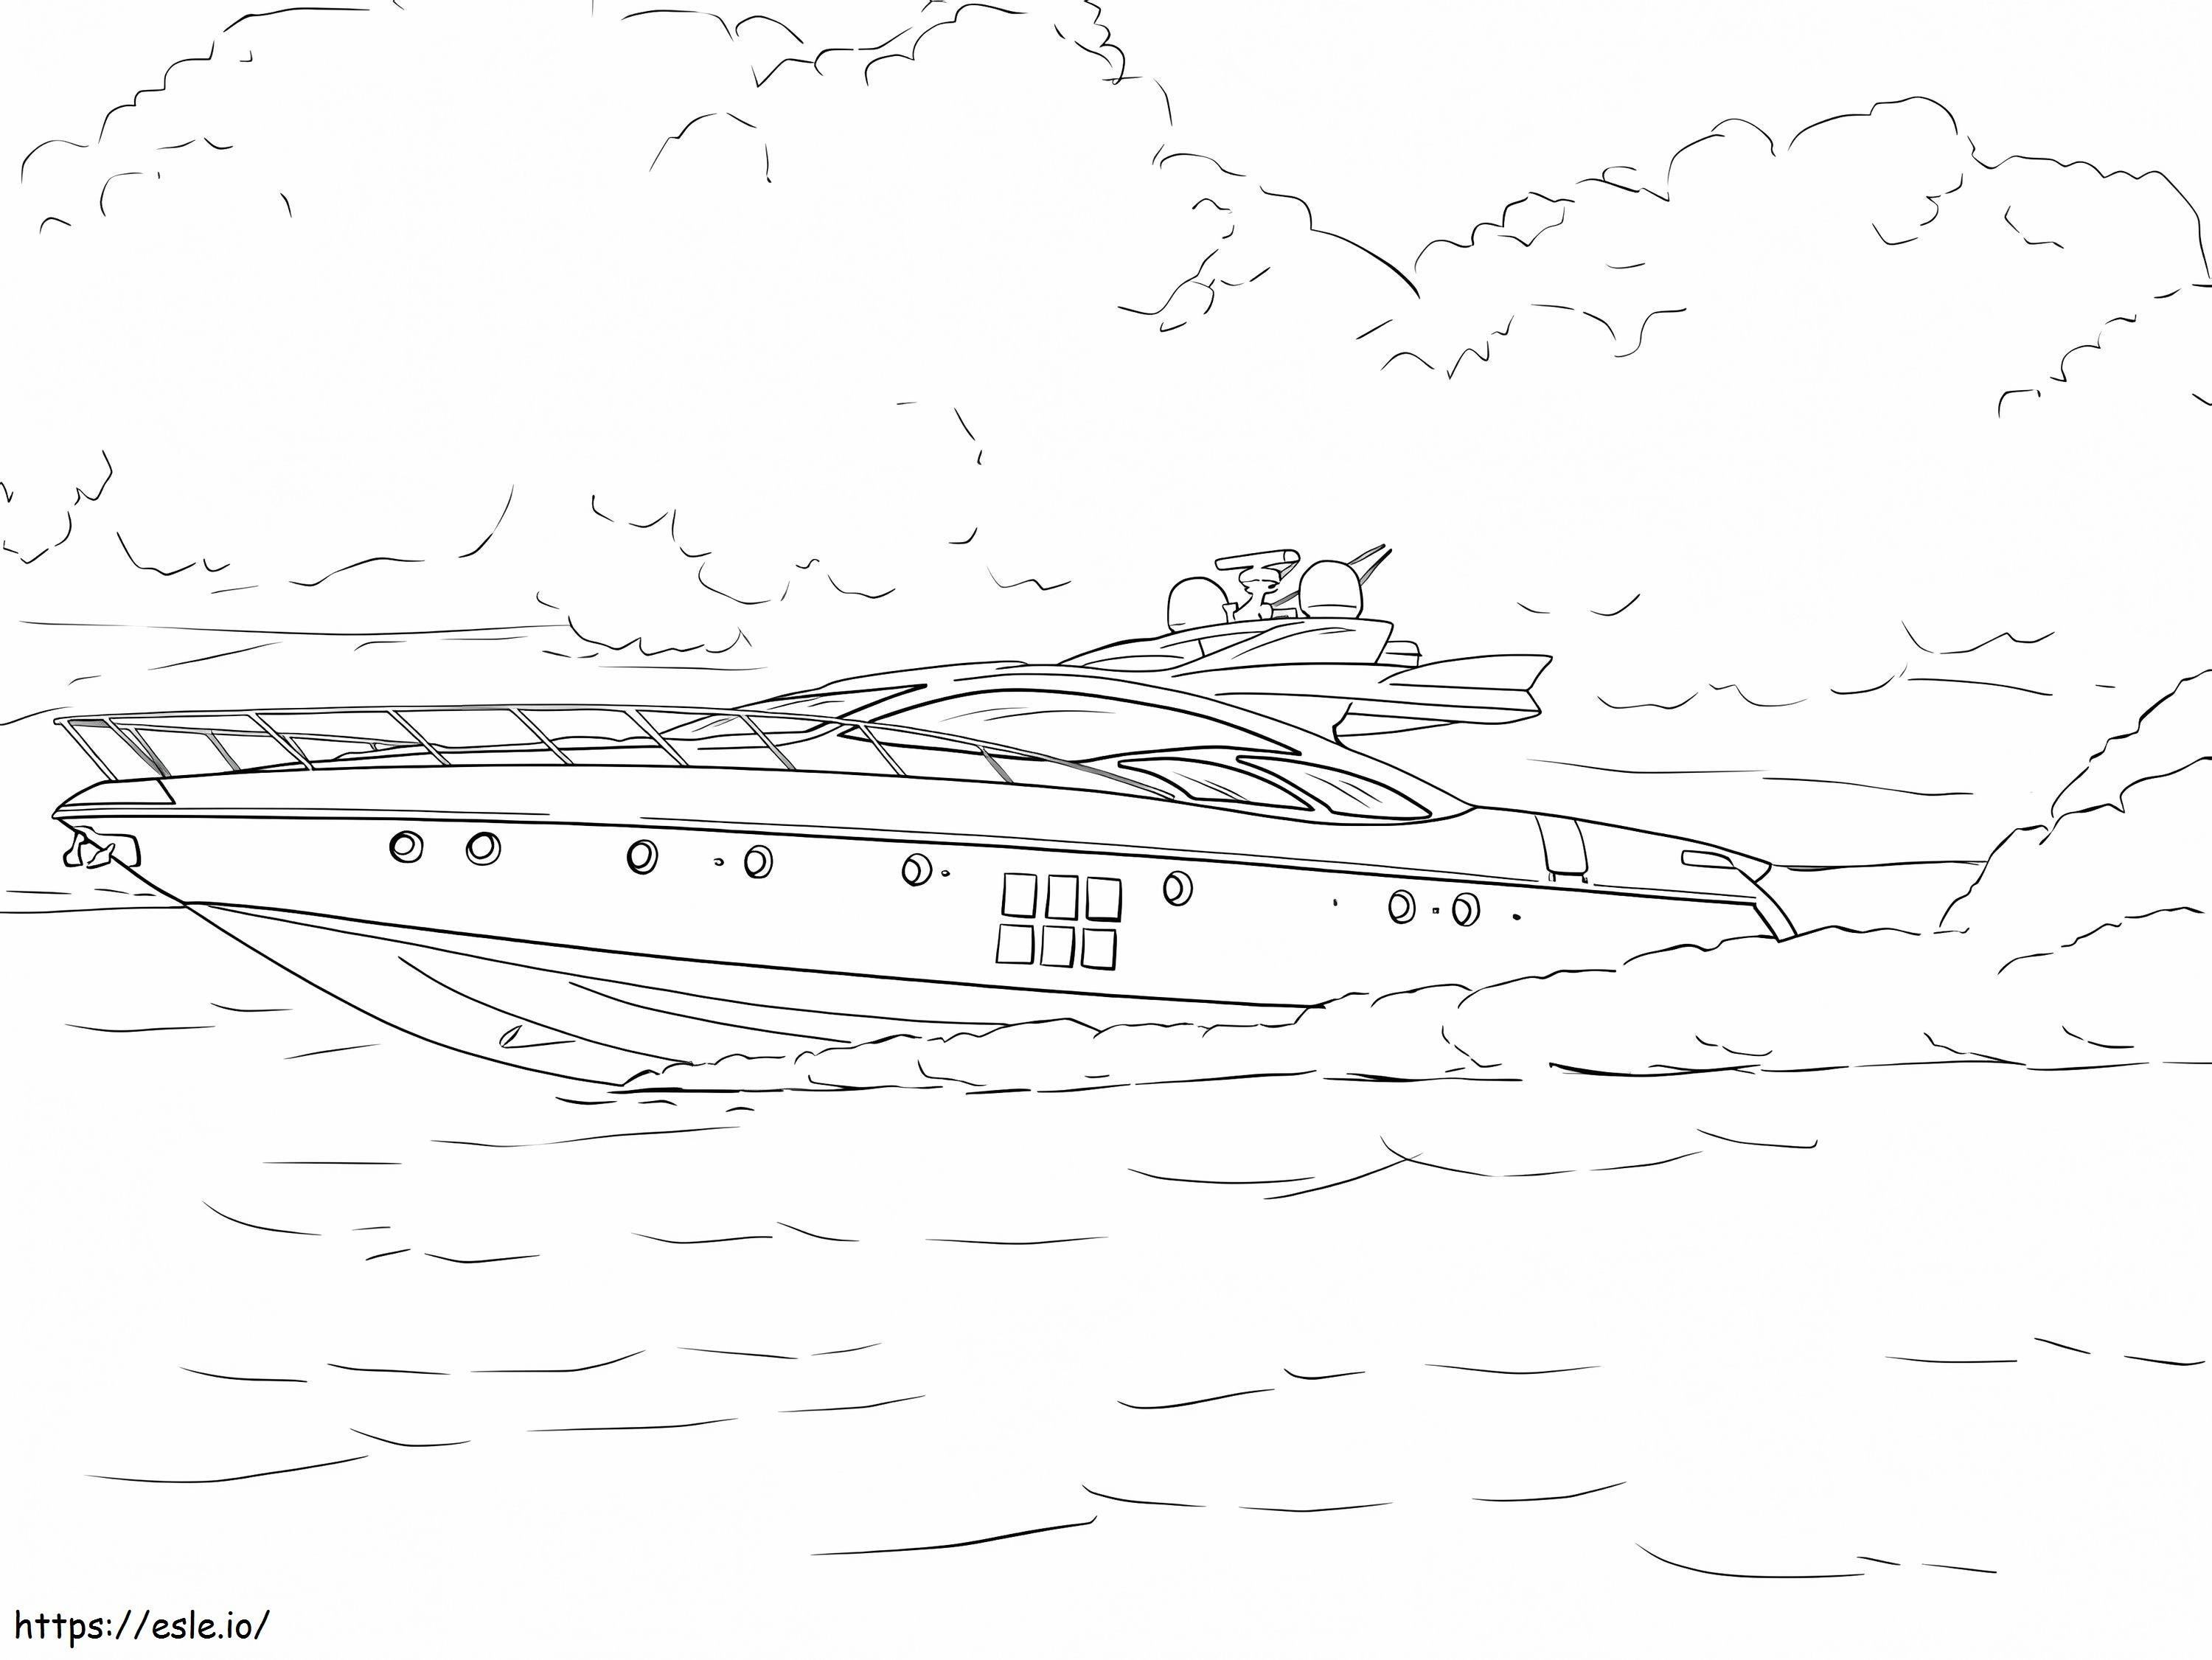 Schnellboot ausmalbilder